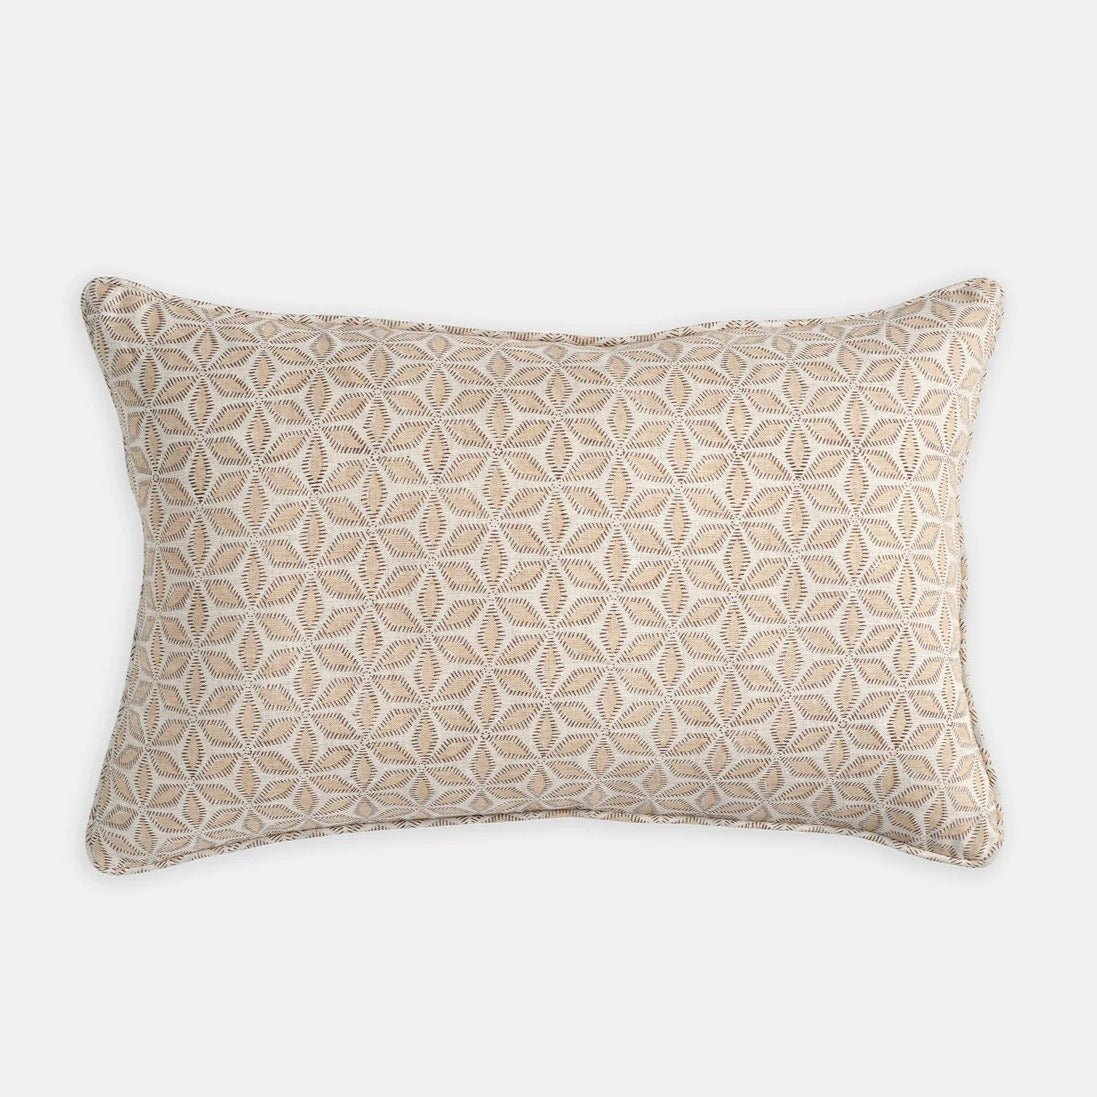 Hanami Shell Pillow, lumbar